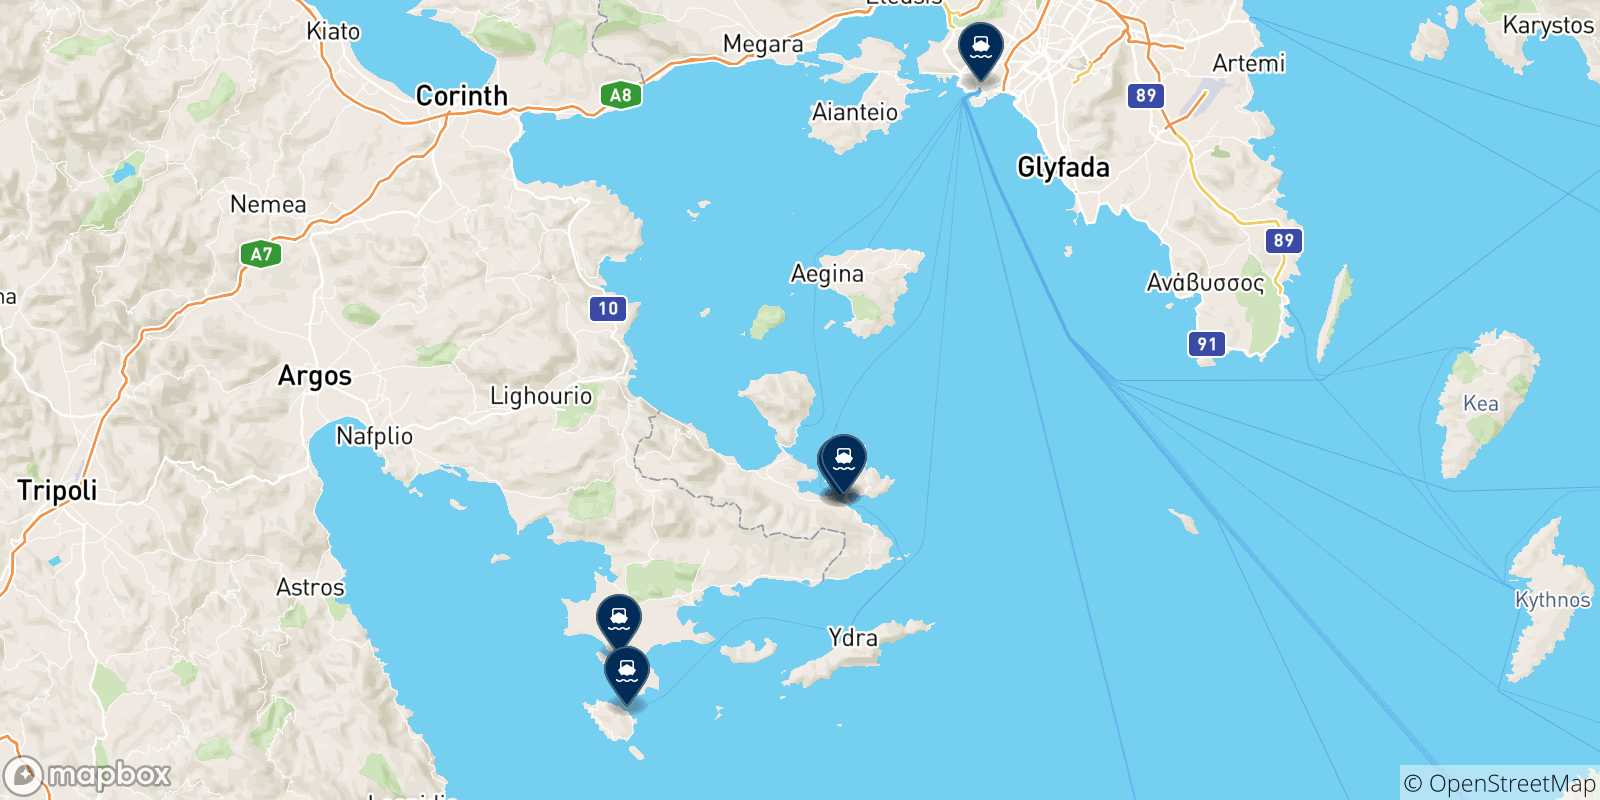 Mappa delle possibili rotte tra Hermioni e la Grecia